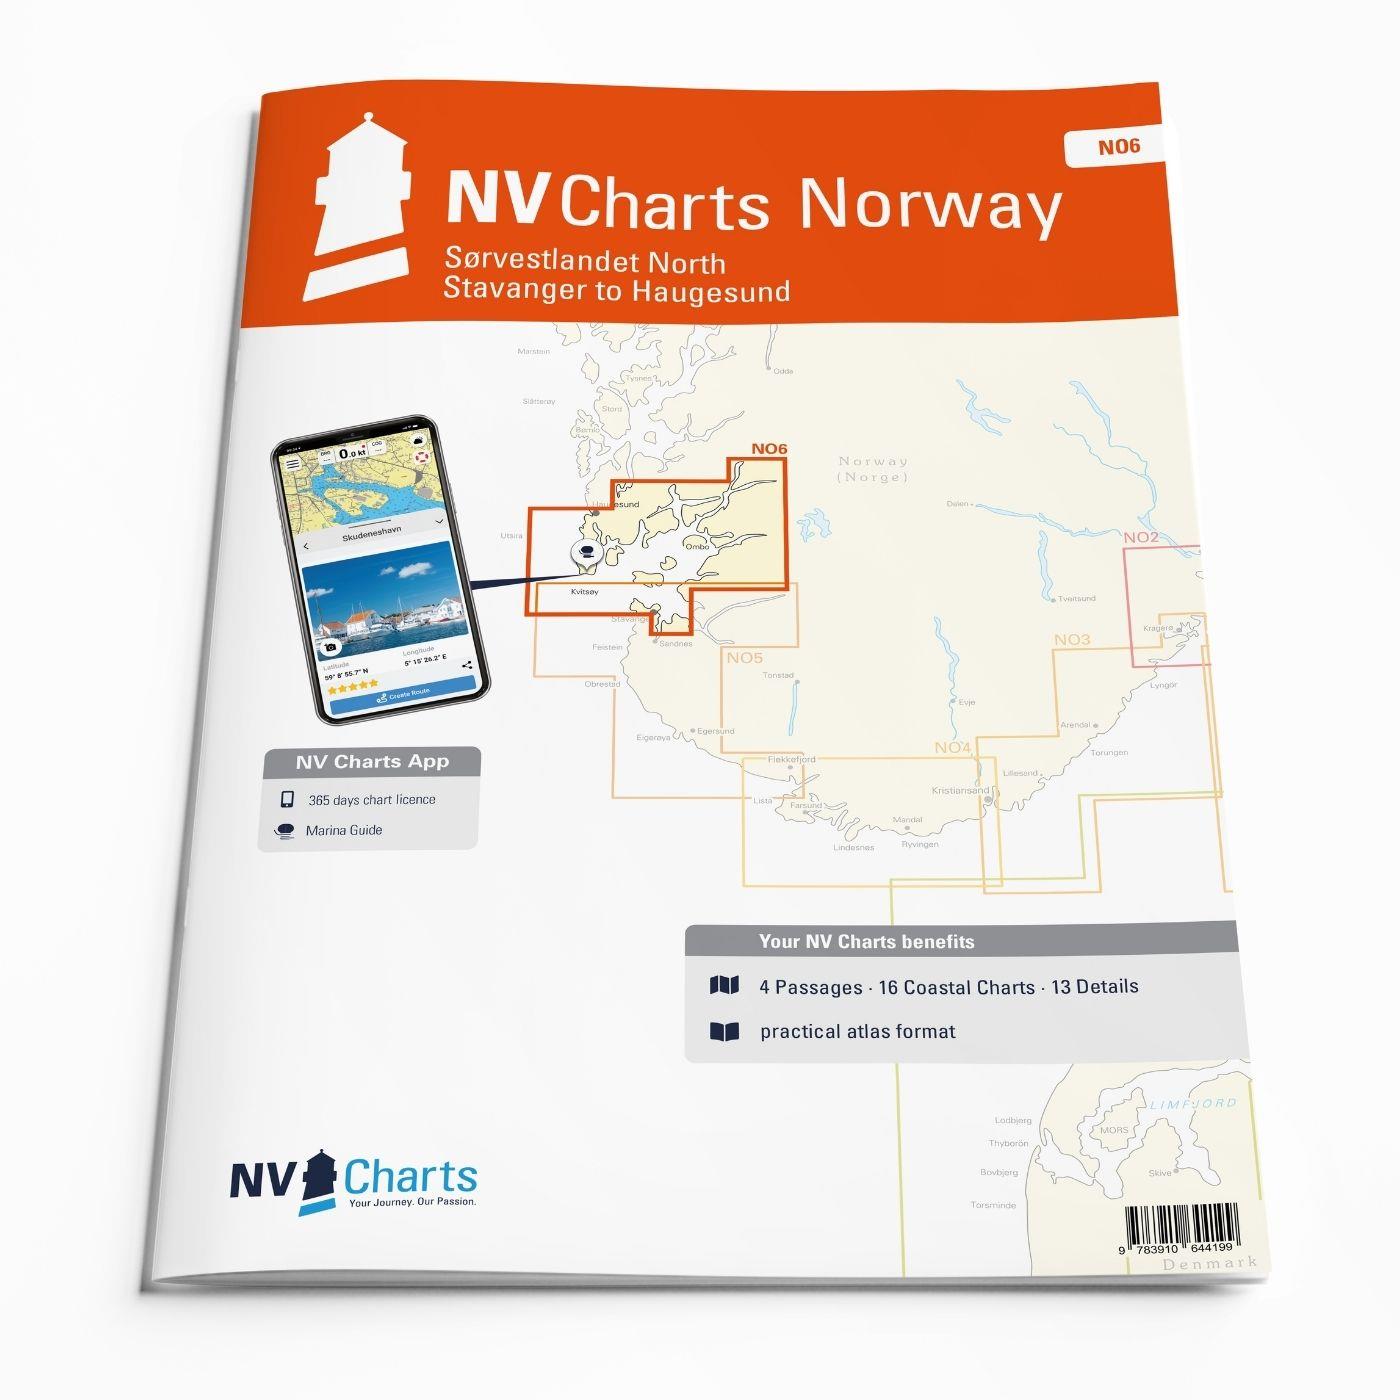 NV Charts Norway NO6 - Sørvestlandet North - Stavanger to Haugesund